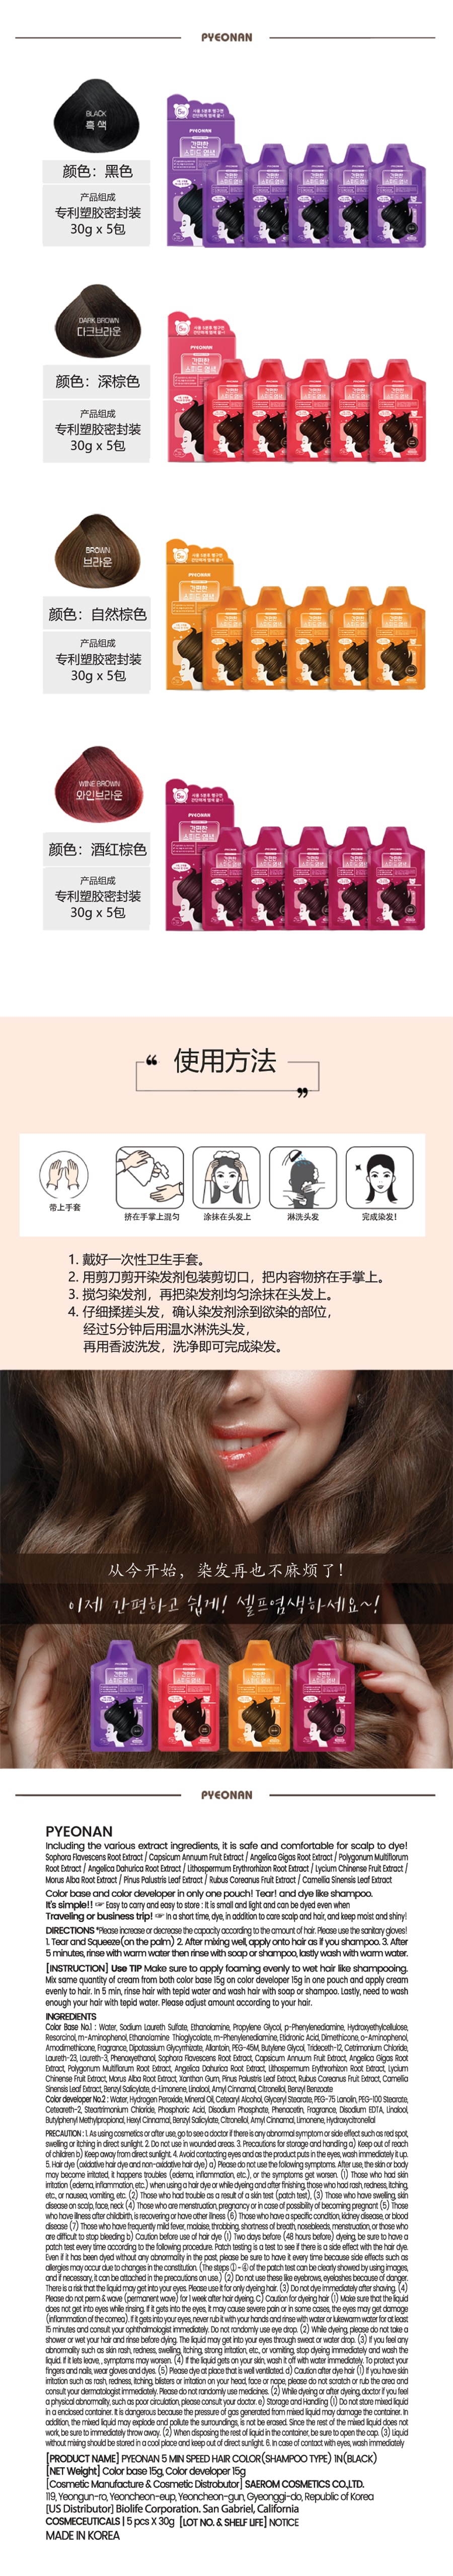 韓國 PYEONAN 5分鐘快速超簡單 香波型染髮劑 #深棕色 5包/盒